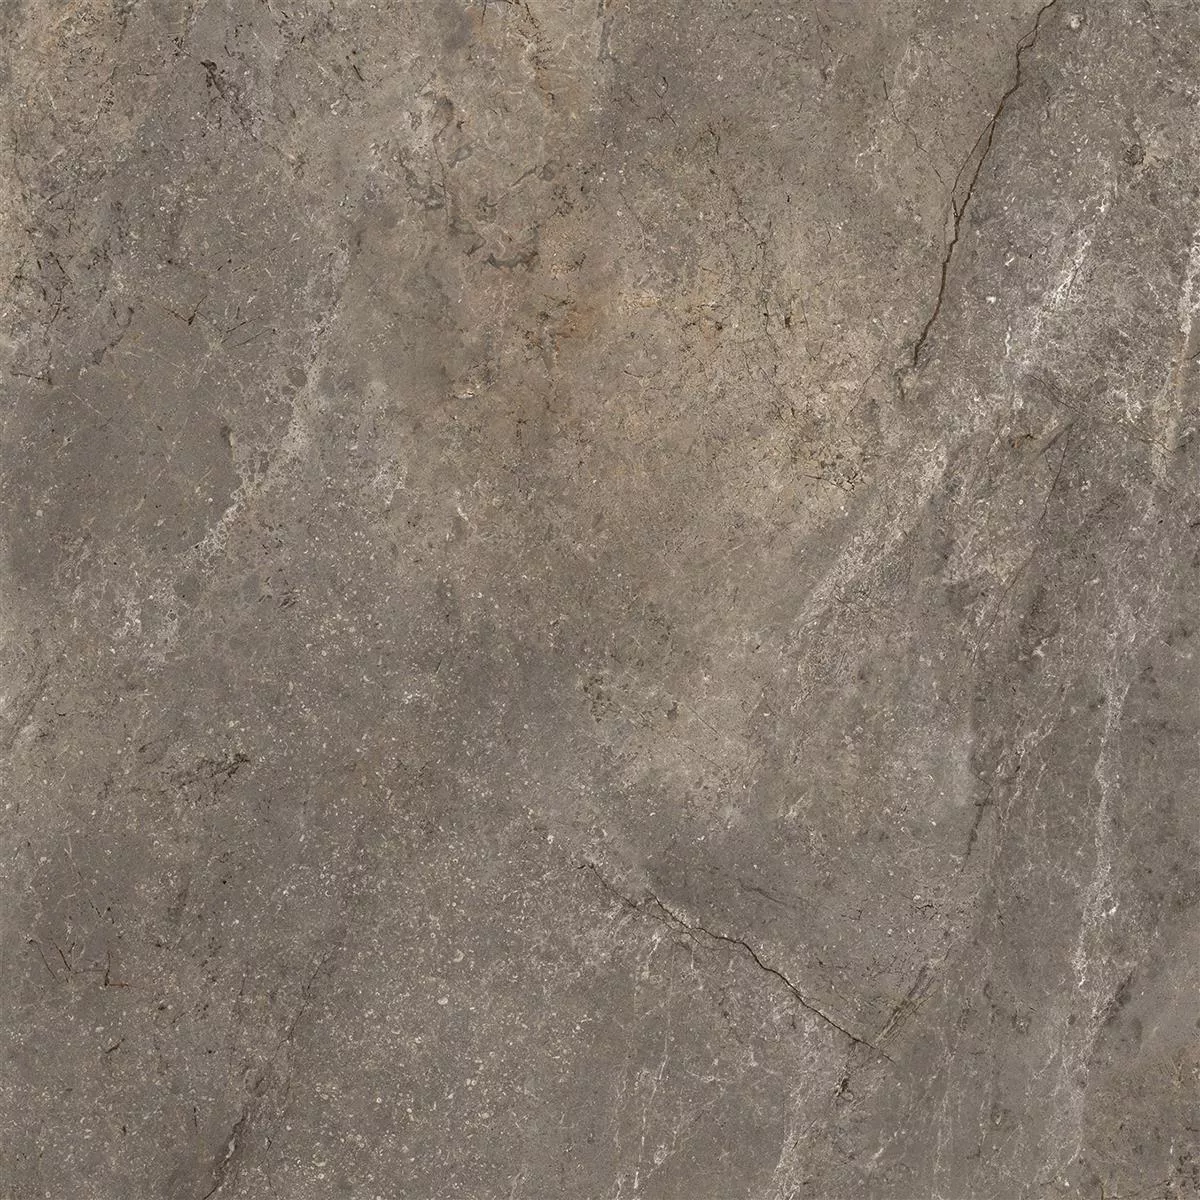 Πρότυπο από Πλακάκια Δαπέδου Pangea Μαρμάρινη Όψη Αμεμπτος Mokka 120x120cm